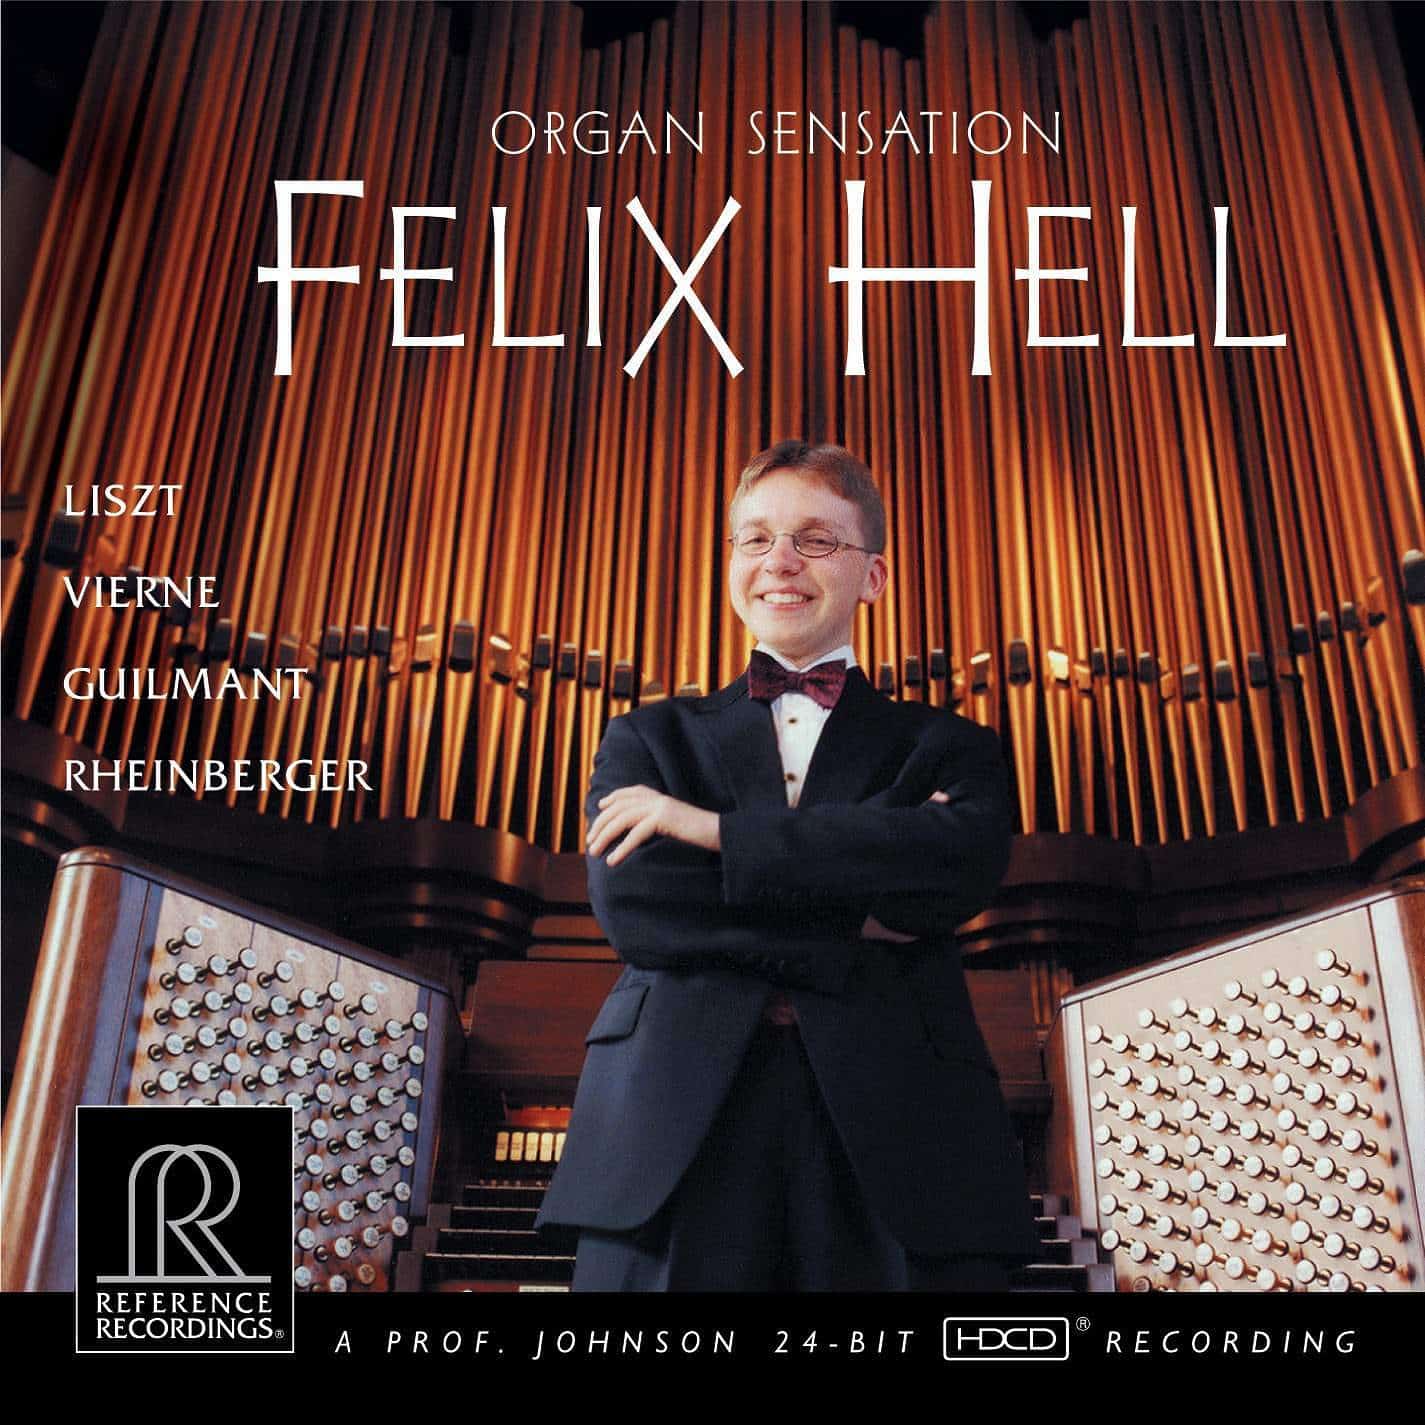 Felix Hell – Organ Sensation (2014) [FLAC 24bit/192kHz]